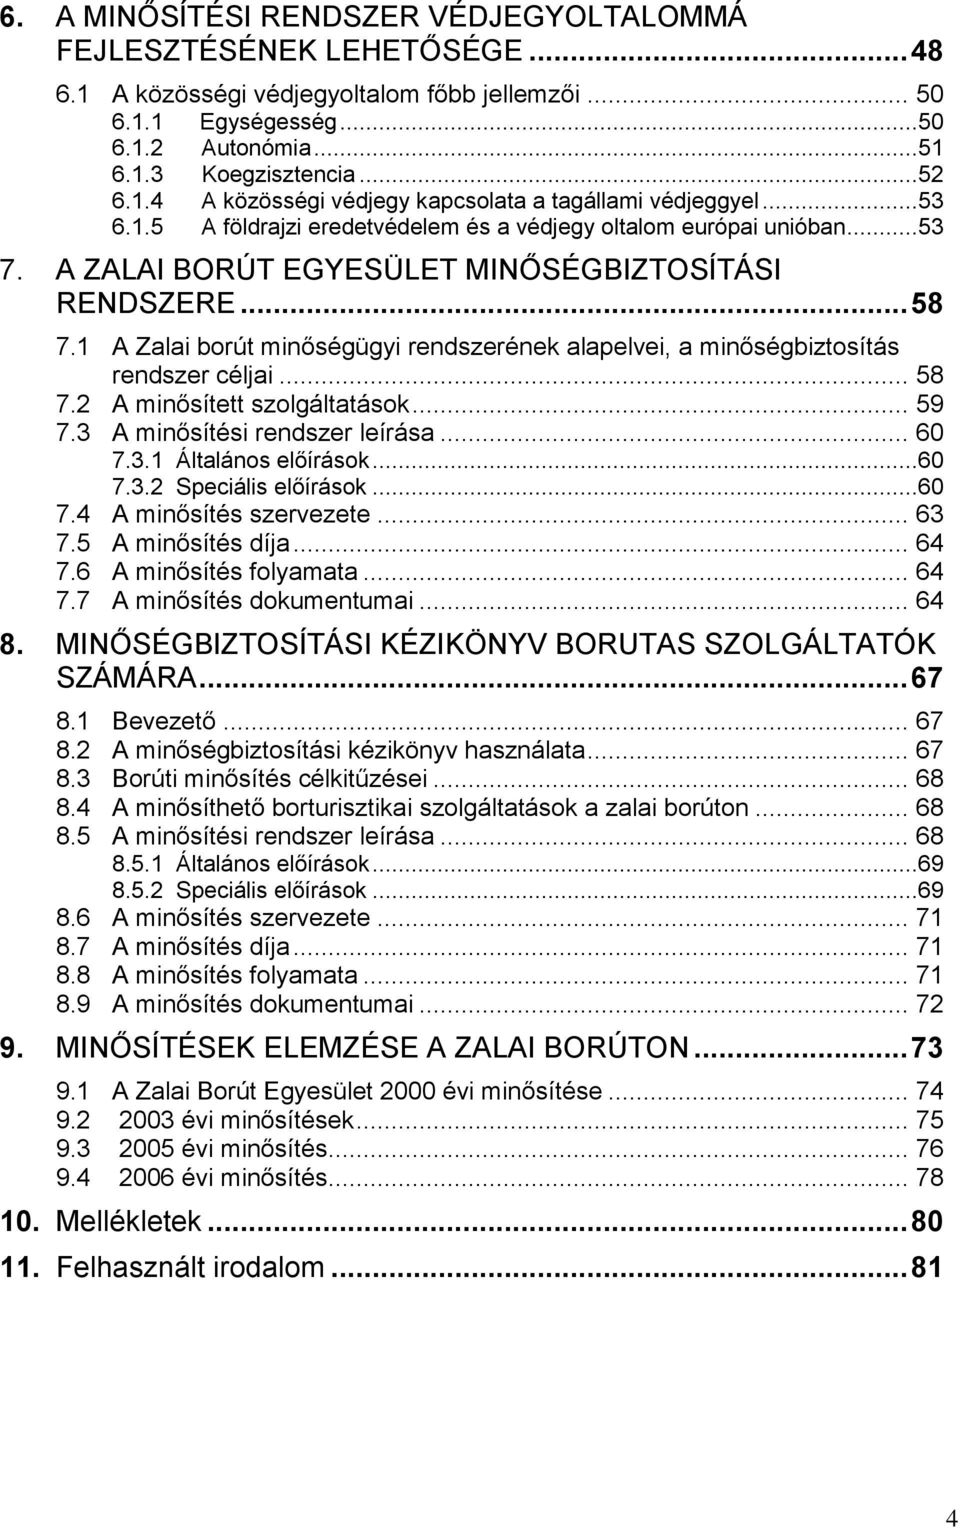 1 A Zalai borút minőségügyi rendszerének alapelvei, a minőségbiztosítás rendszer céljai... 58 7.2 A minősített szolgáltatások... 59 7.3 A minősítési rendszer leírása... 60 7.3.1 Általános előírások.